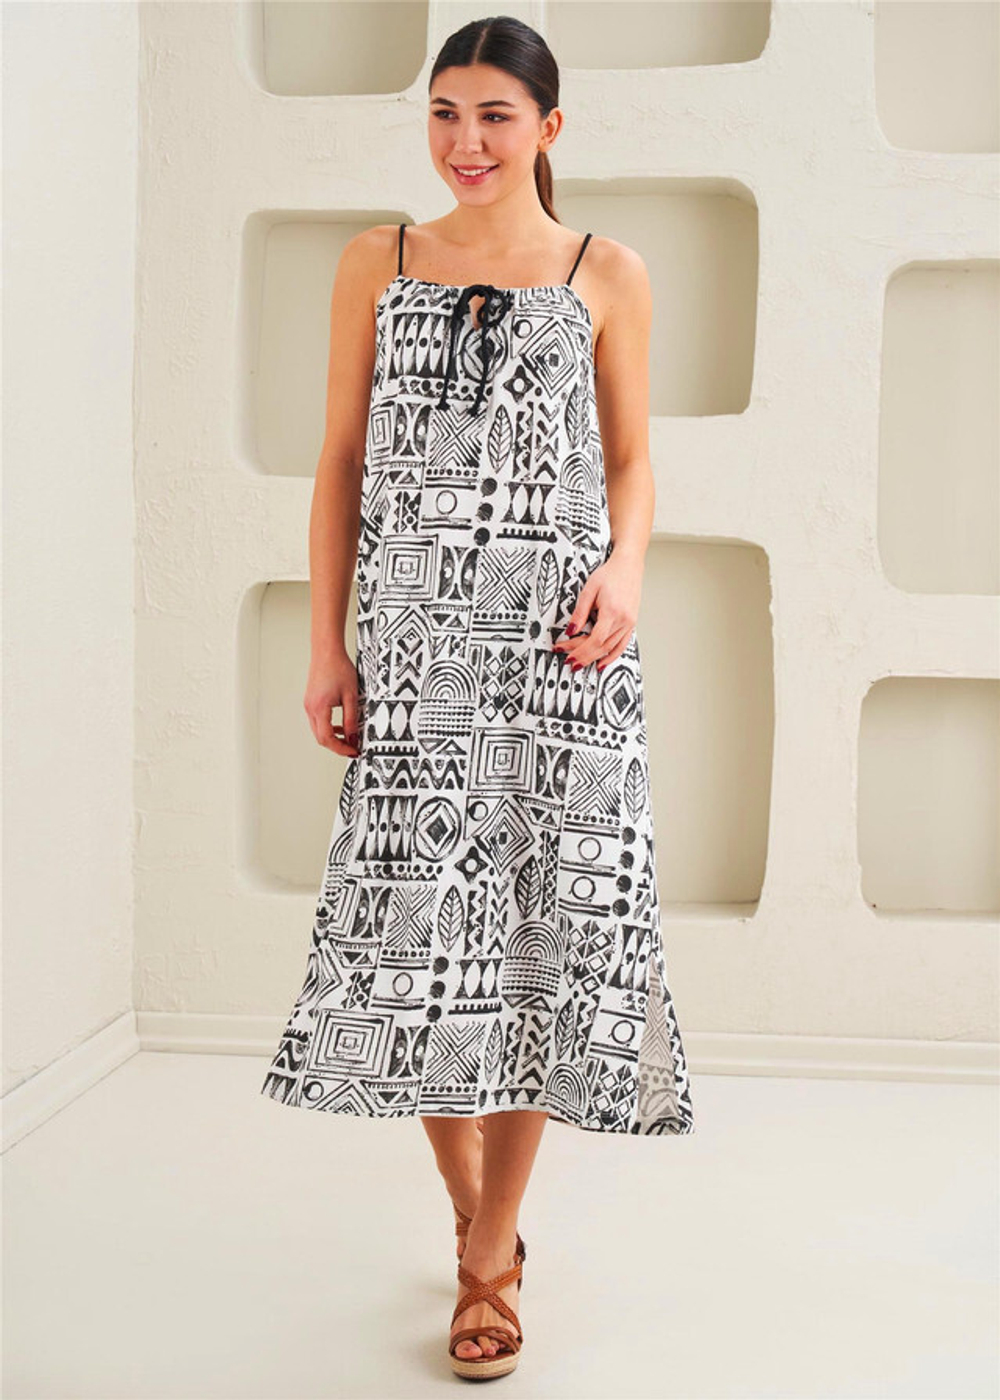 Женское платье с принтом, вязанные детали, спортивный дизайн с бретелями - 45334